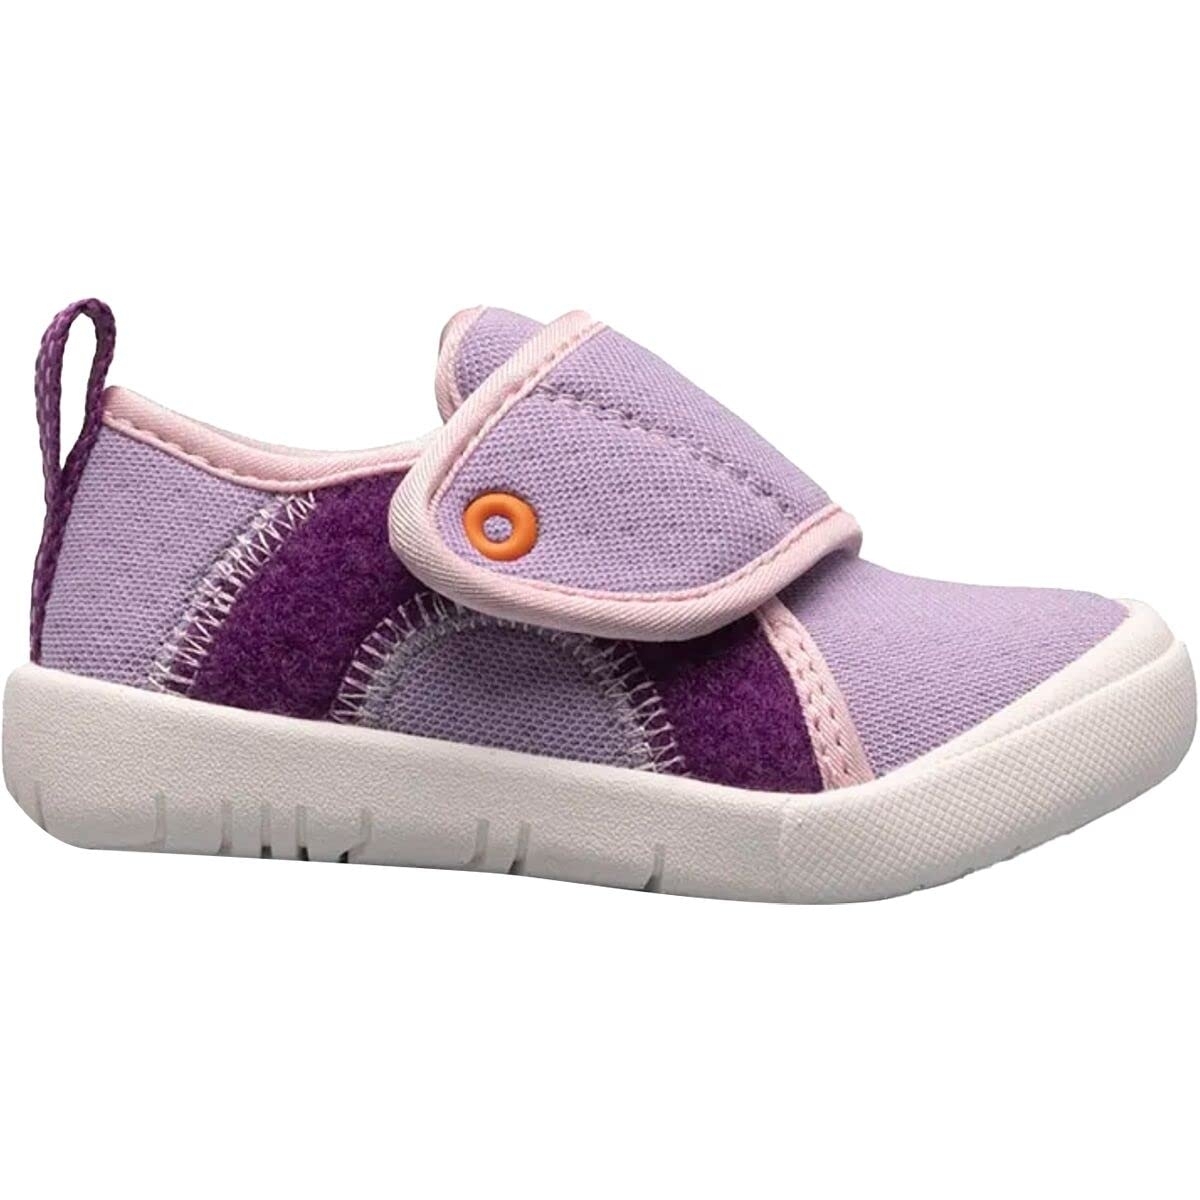 BOGS Unisex Baby Kicker Hook And Loop Shoe Sneaker Lavender Multi - 72811I-541 1 LAVENDER MULTI - LAVENDER MULTI, 6 Toddler